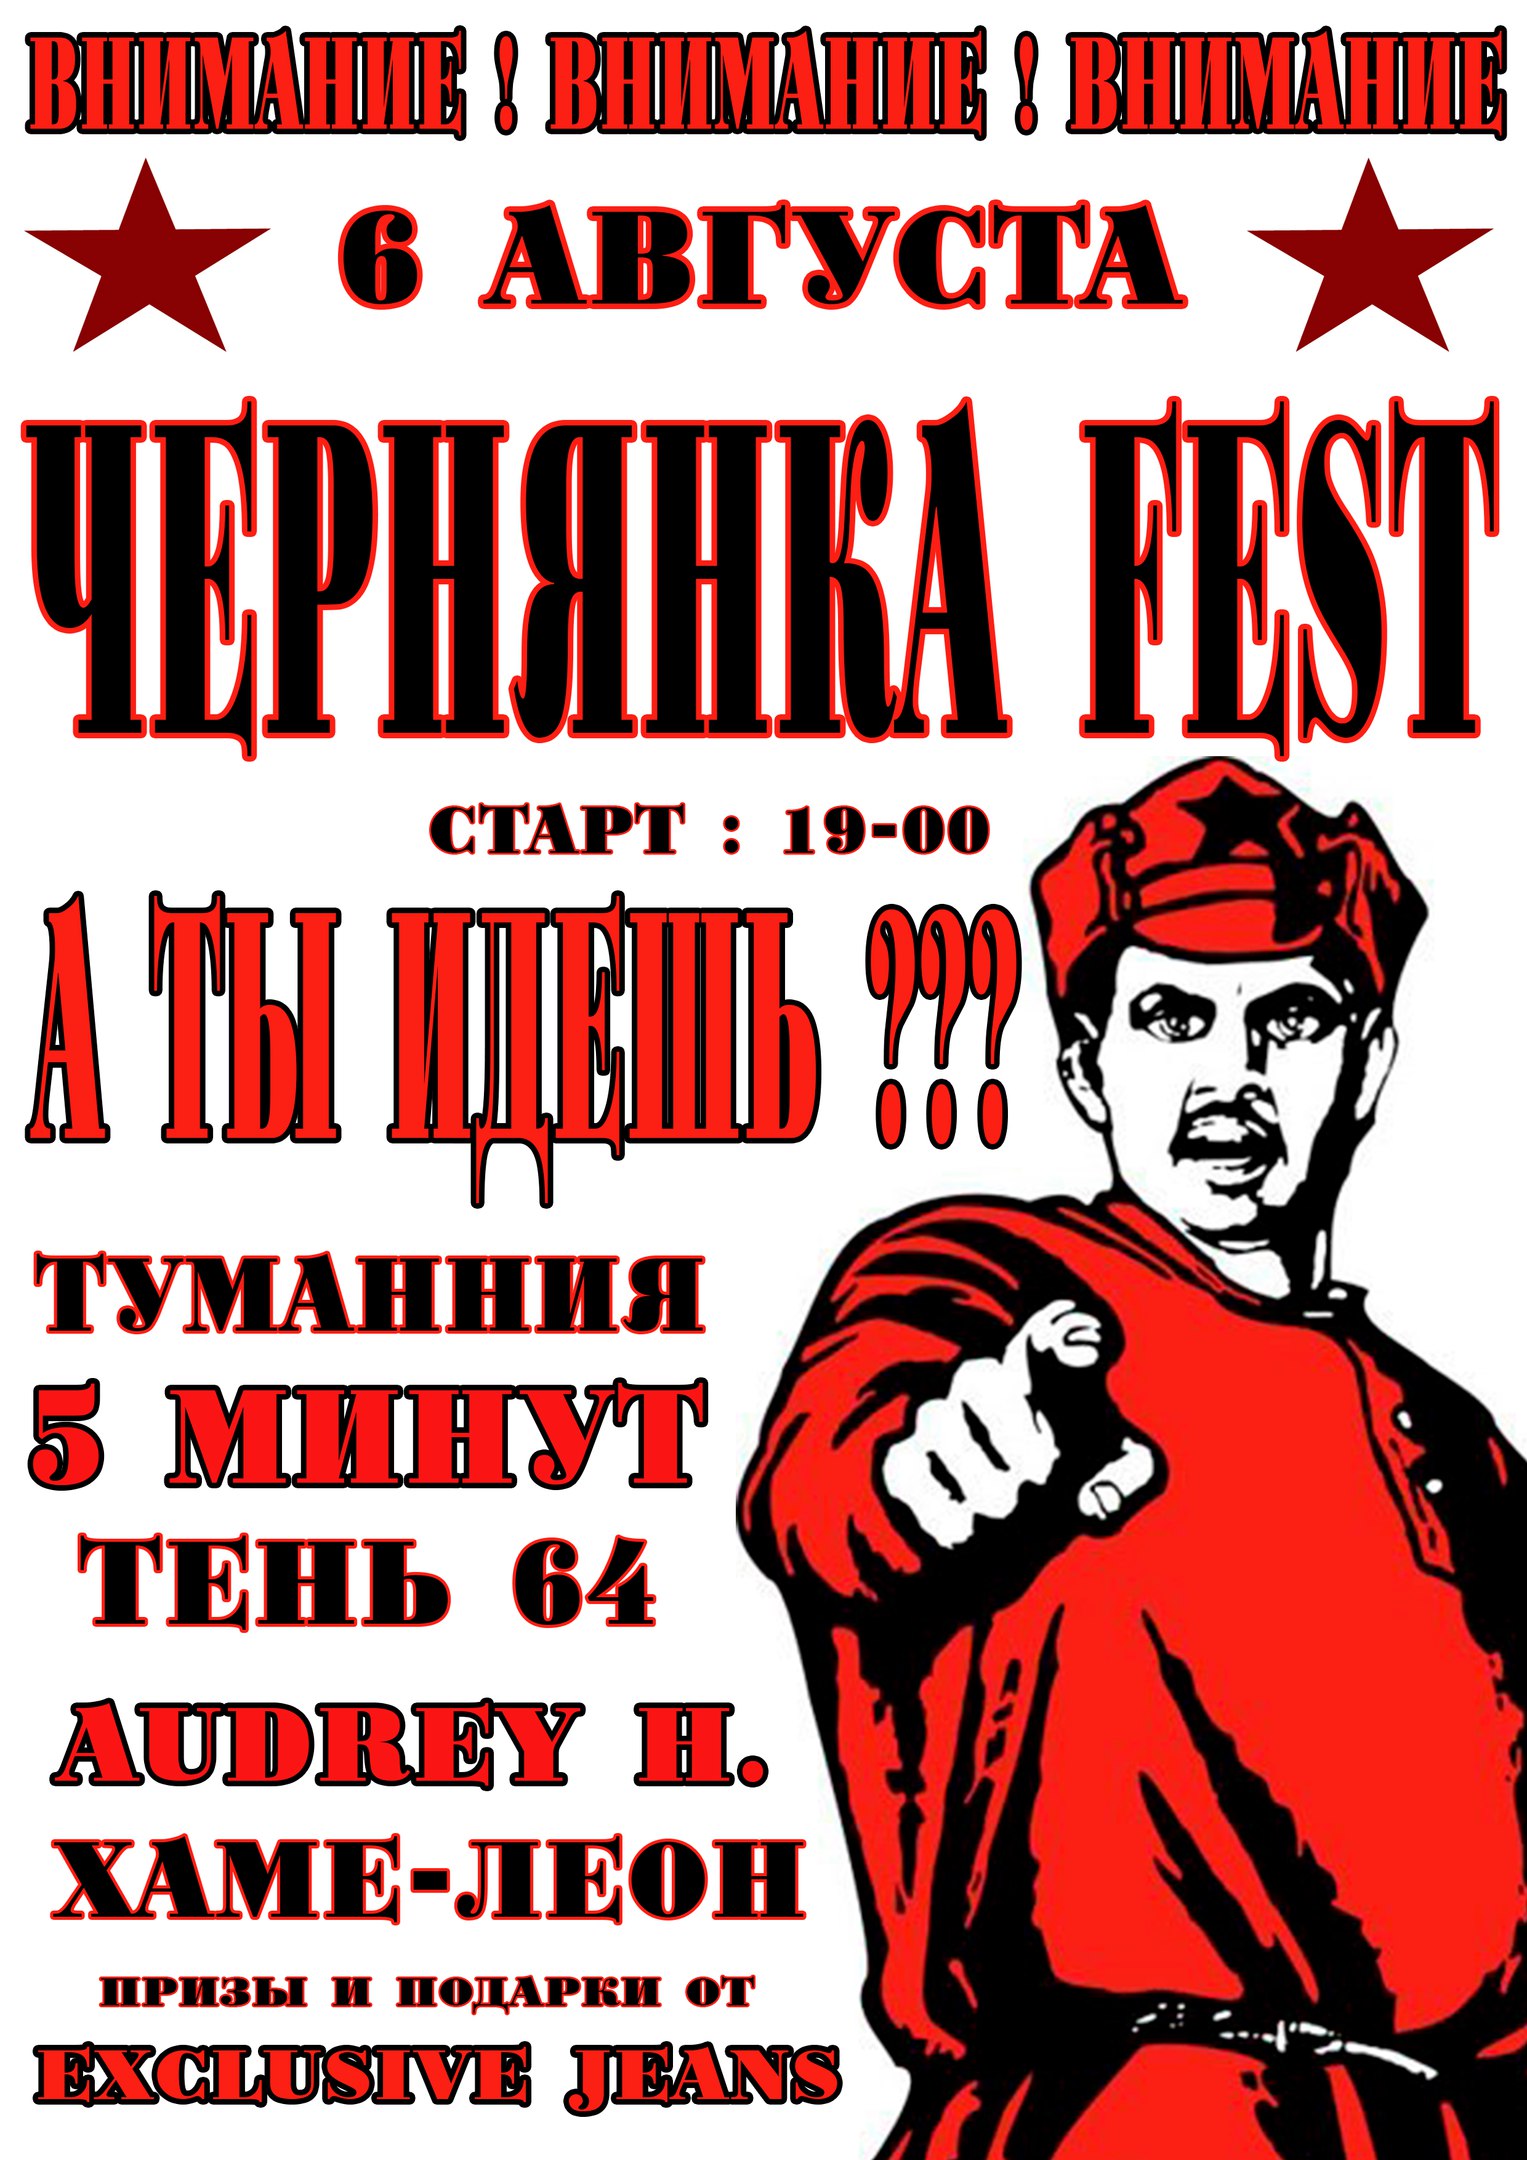 Чернянка FEST – 2016